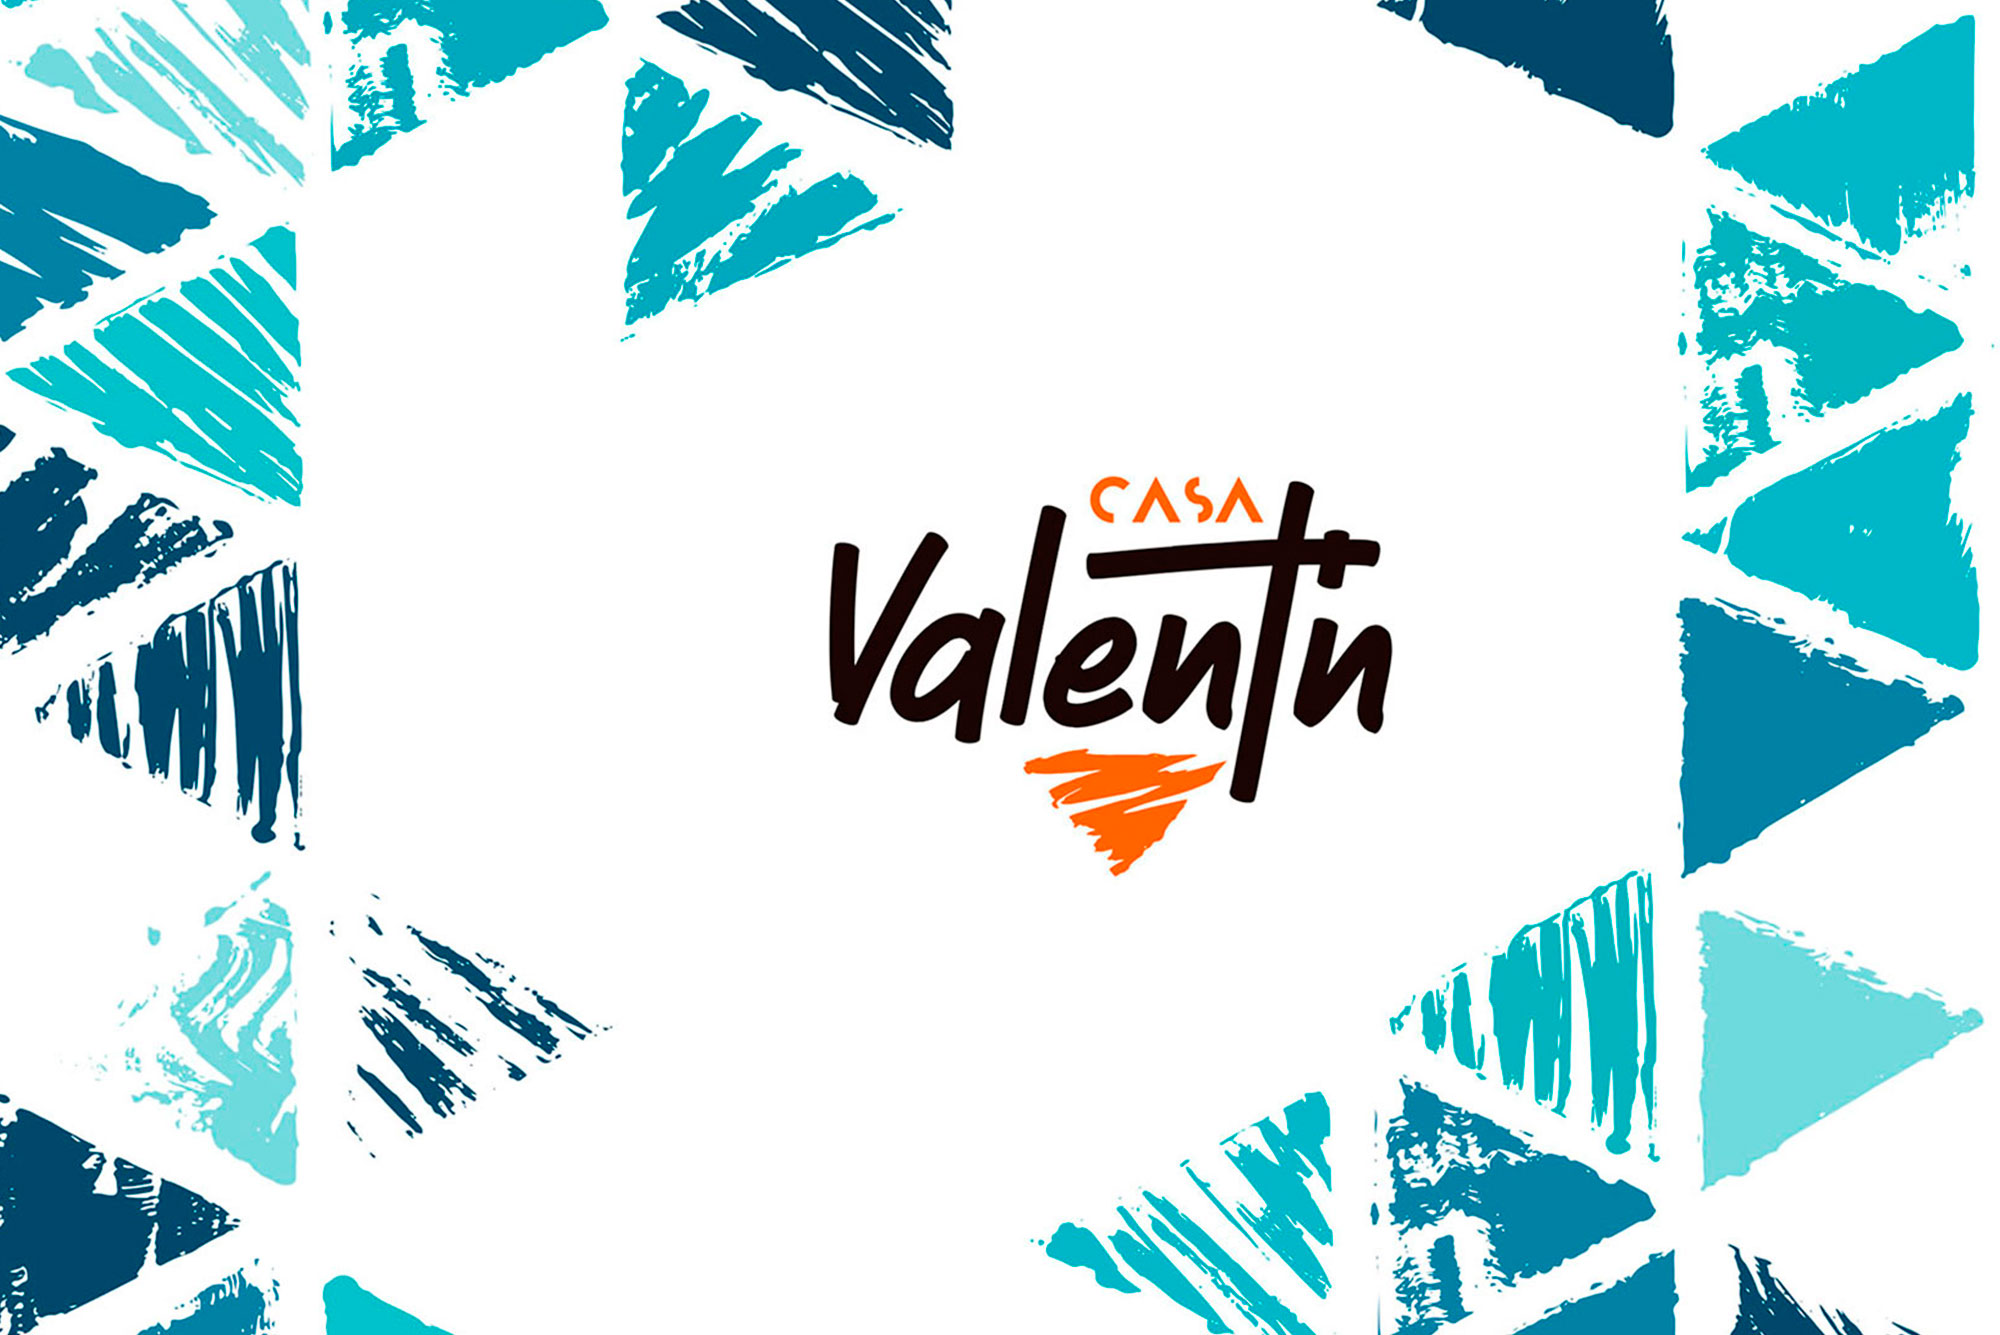 branding identidad corporativa restaurante Valencia diseño logotipo publicidad